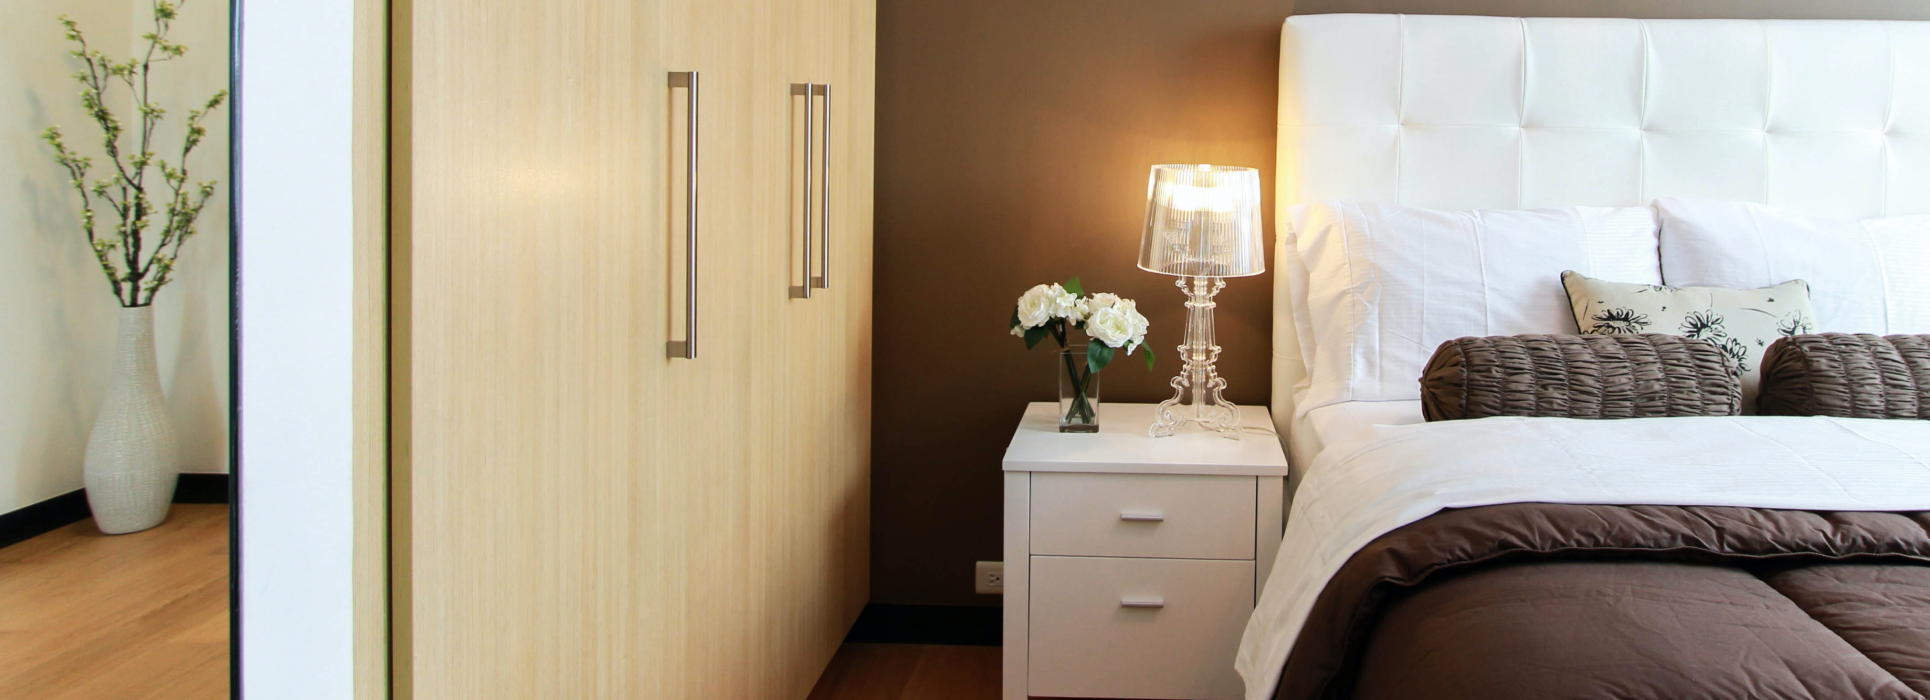 Idées d'éclairage de la chambre - Créez un éclairage de chambre à coucher moderne avec des appareils intelligents